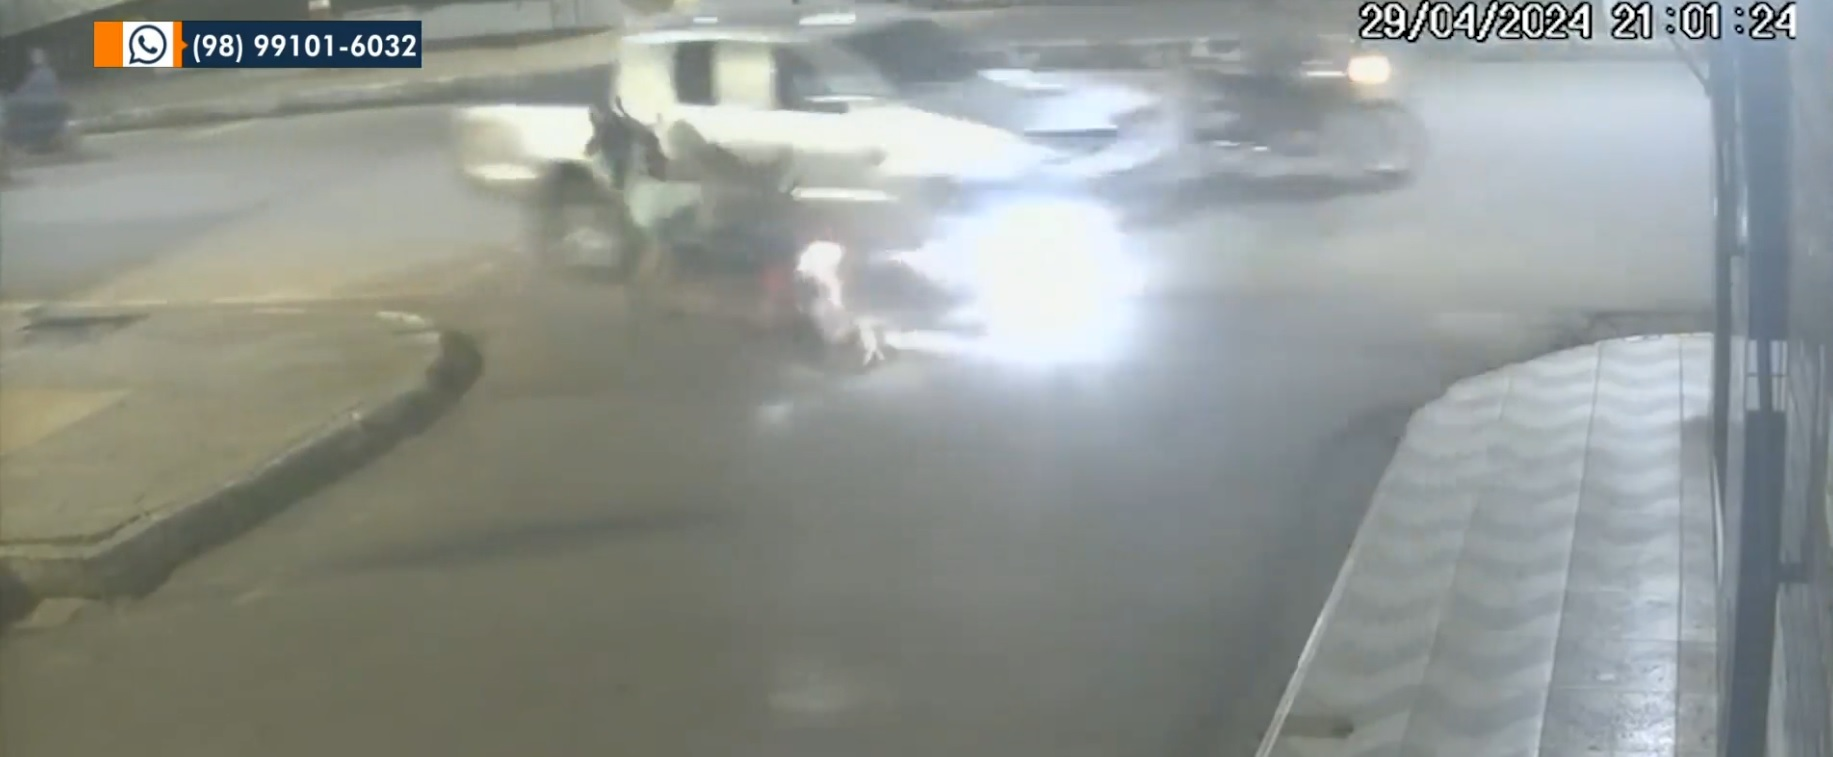 Após atropelar duas pessoas, caminhonete desgovernada atinge frente de loja no MA